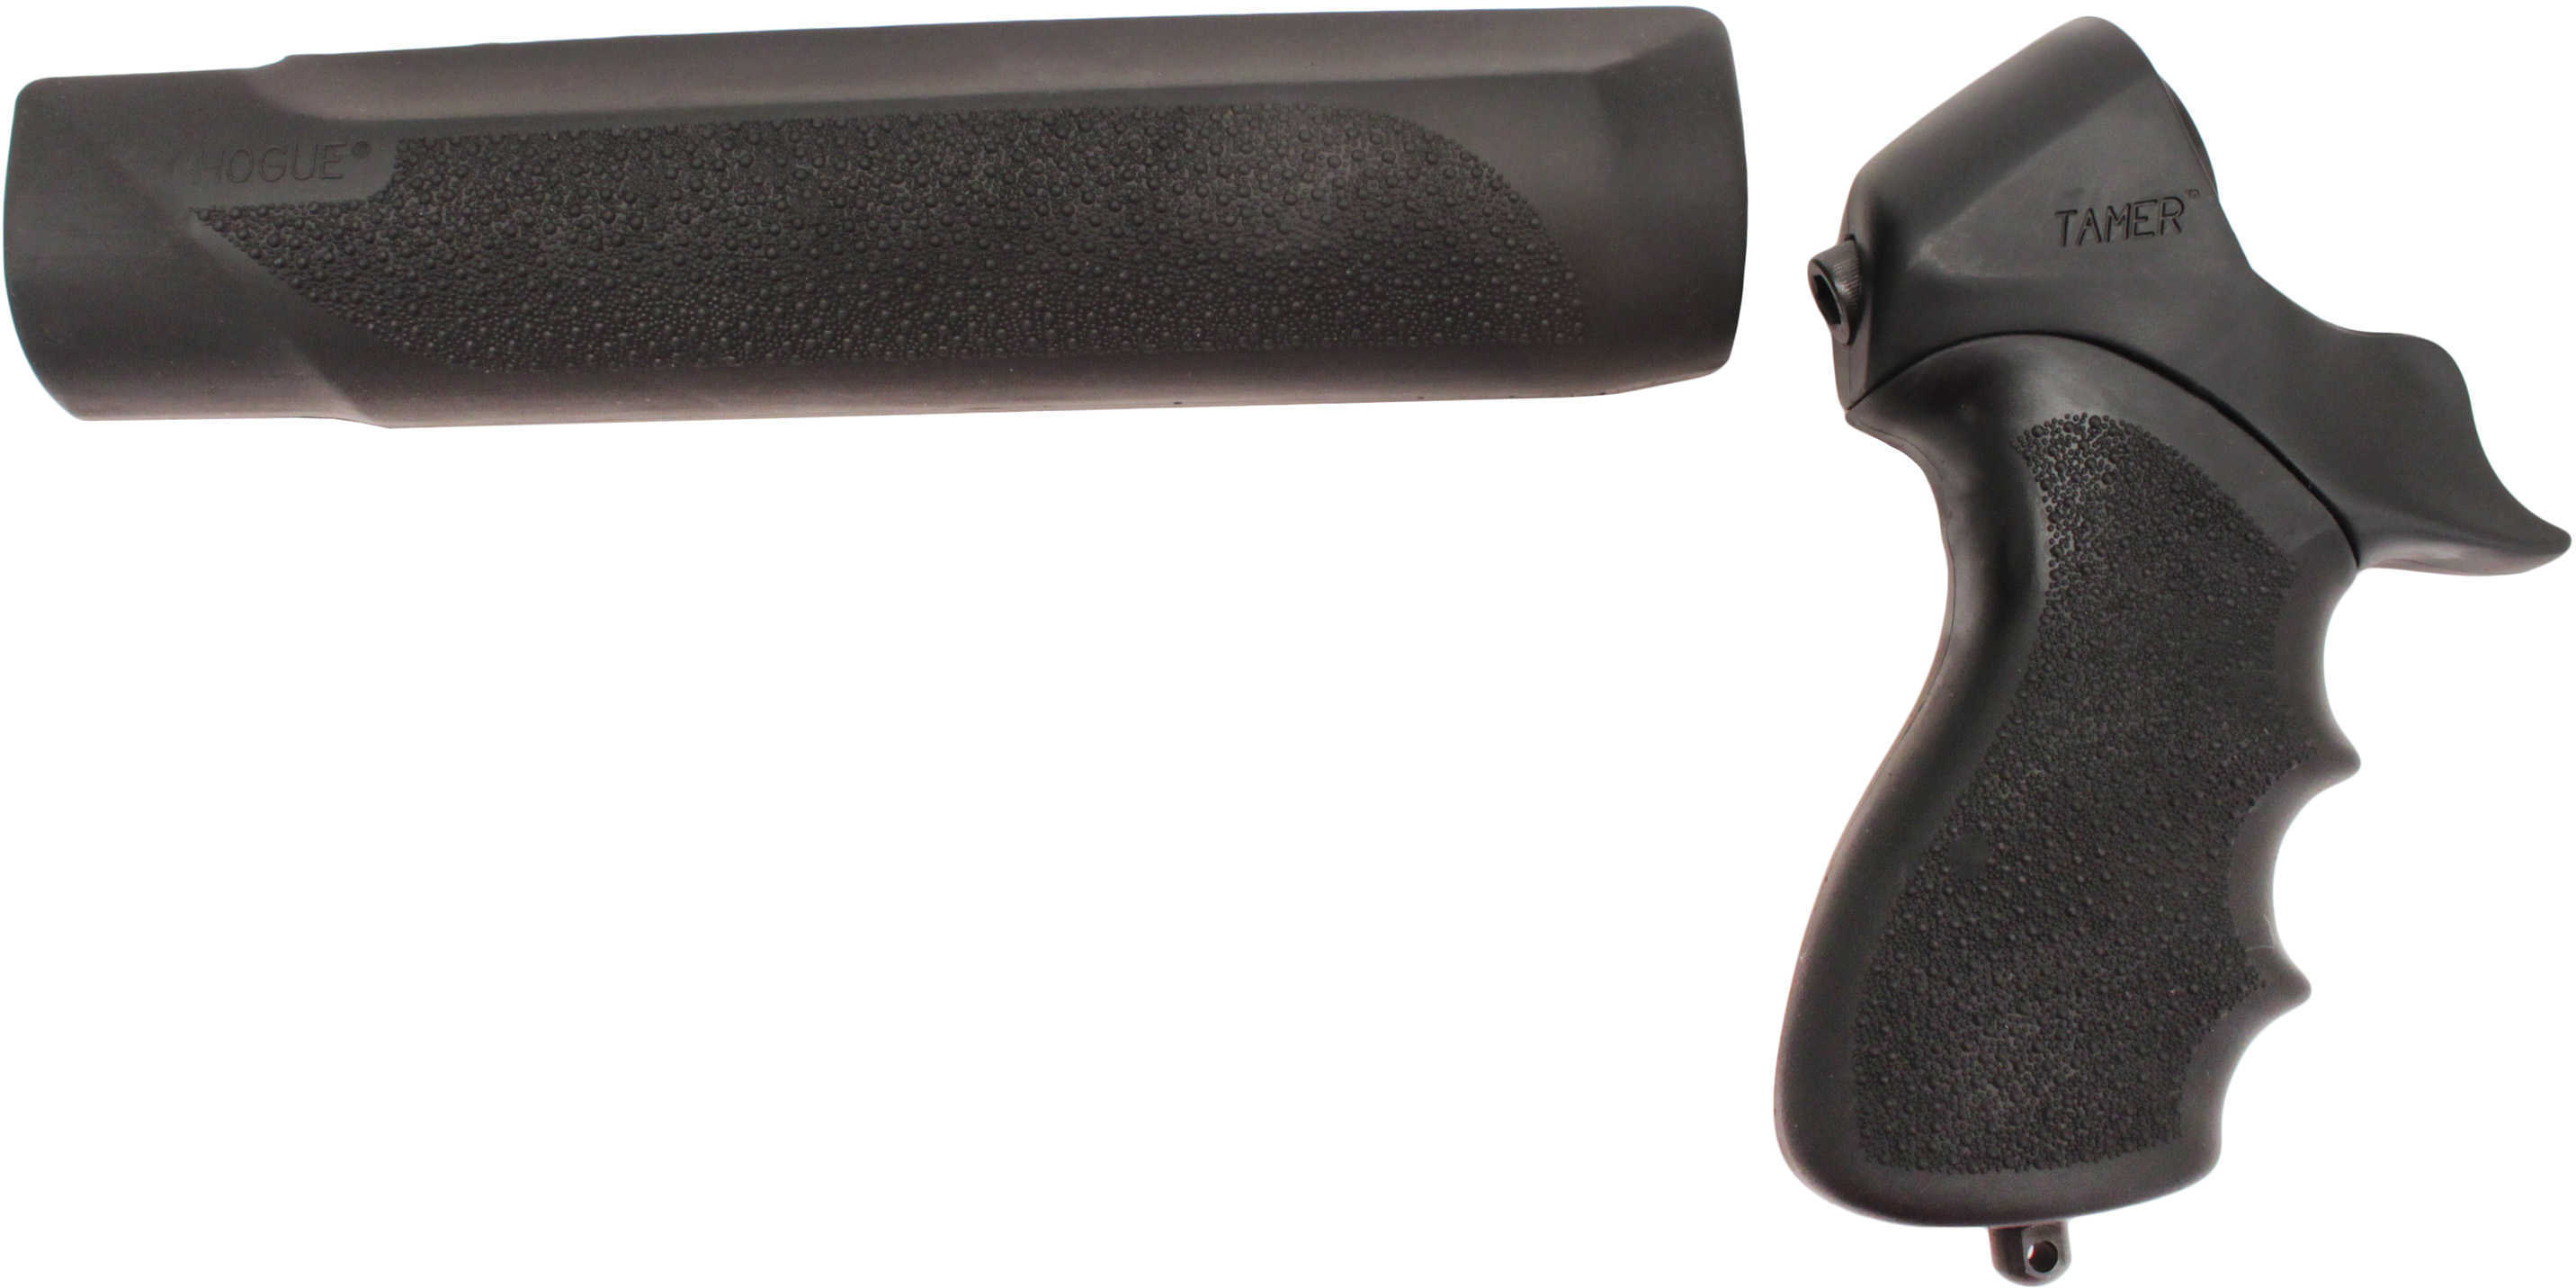 Hogue Mossberg 500 12 Gauge OverMolded Shotgun Pistol Grip and Forend Black Finger Grooves